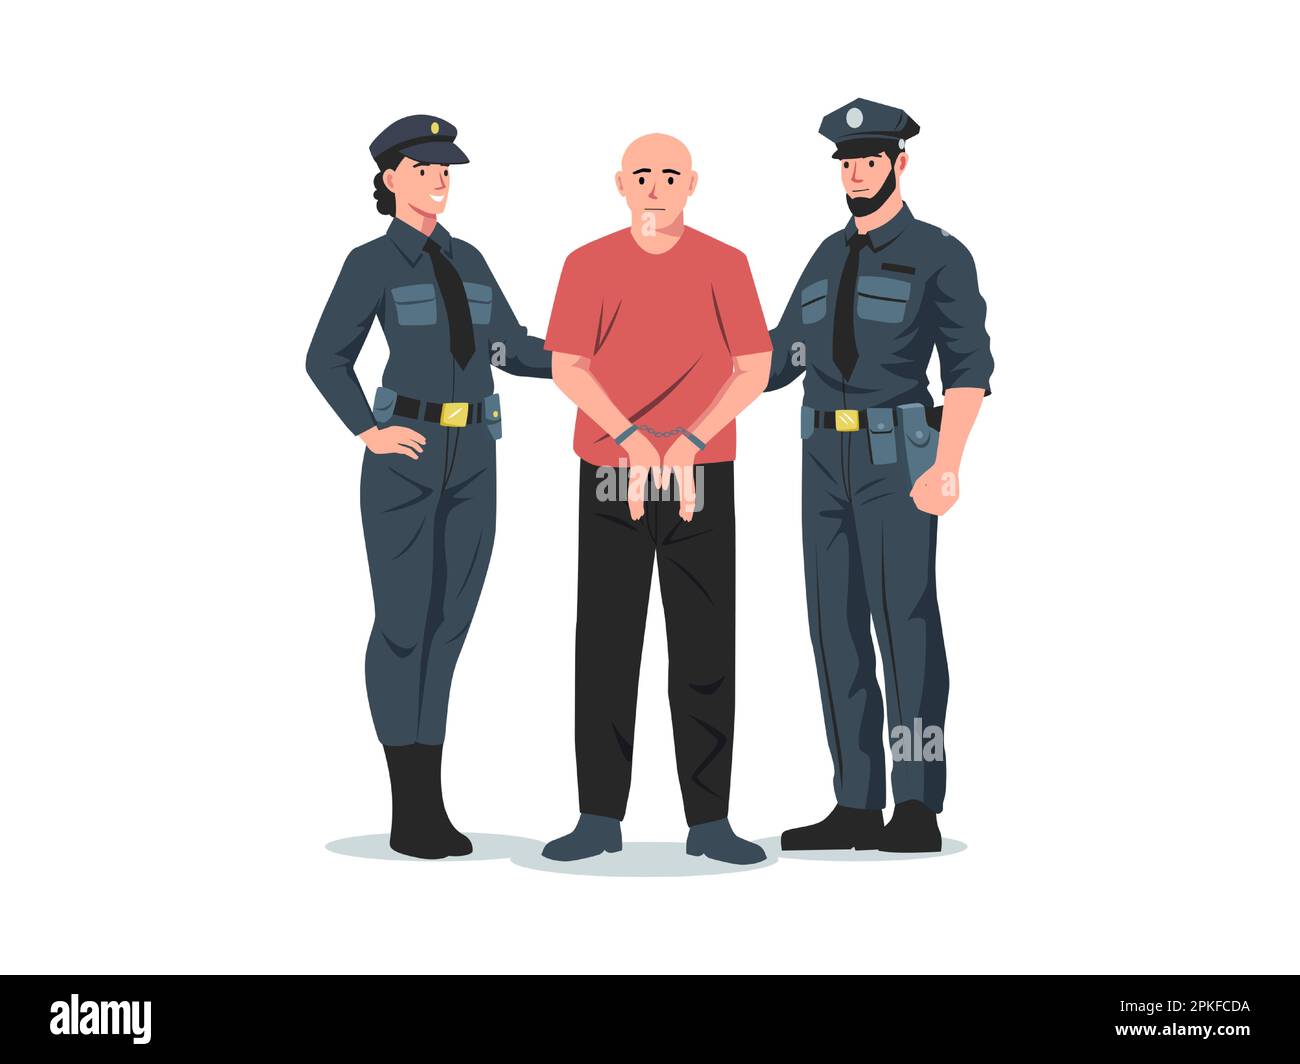 Arresto della polizia. Poliziotto e poliziotto arrestano criminali con manette, personaggi dei poliziotti in uniforme rapito ladro. Vettore ill Illustrazione Vettoriale